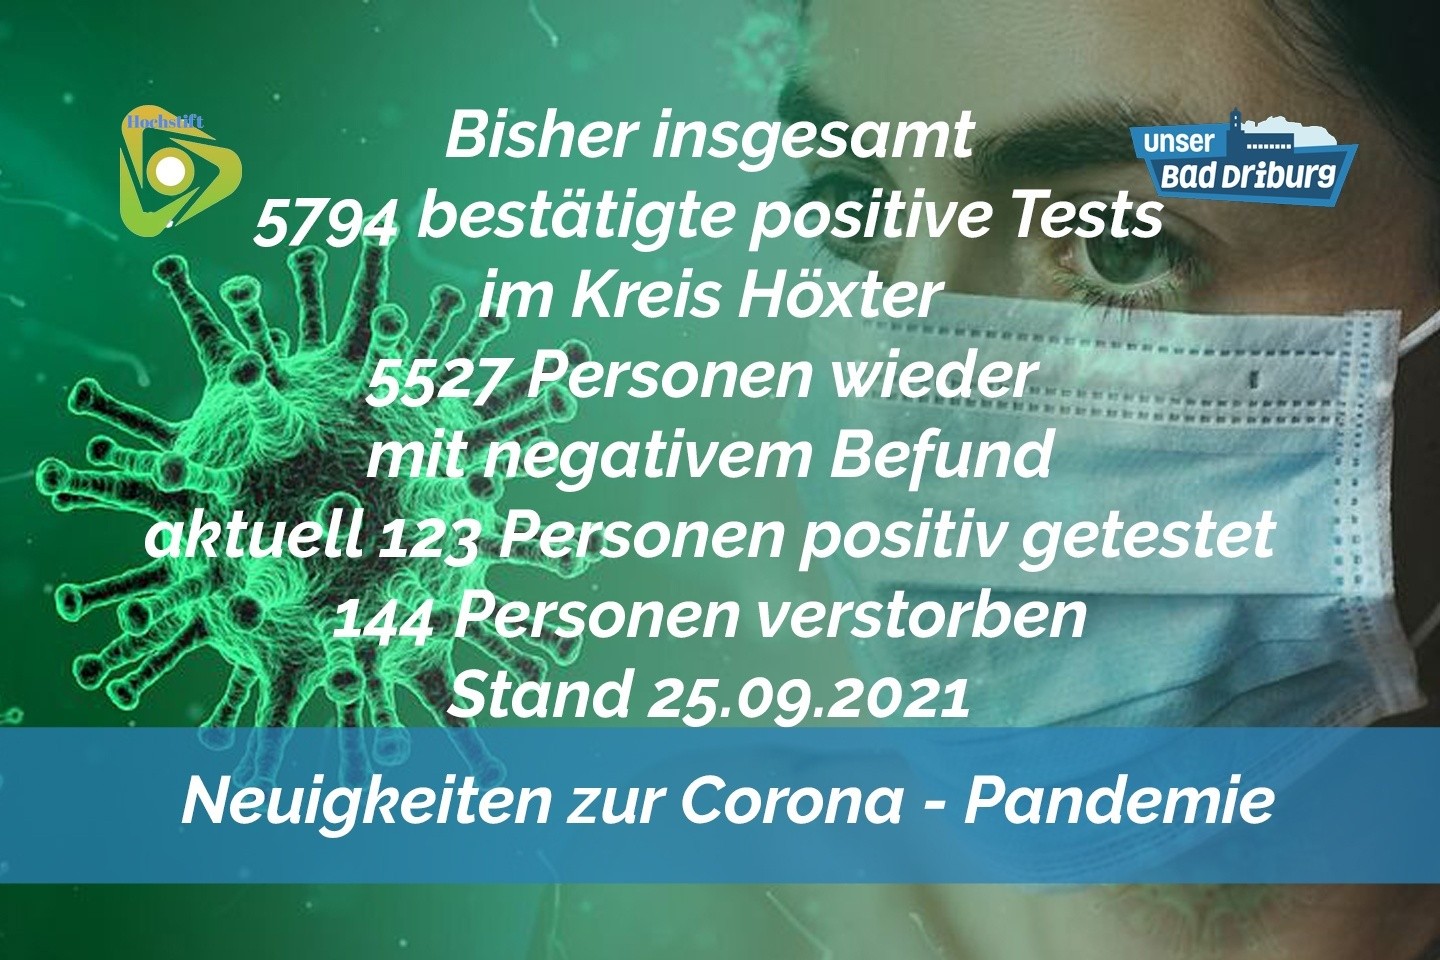 Update 25. September: 3 weitere amtlich positive Tests im Kreis Höxter